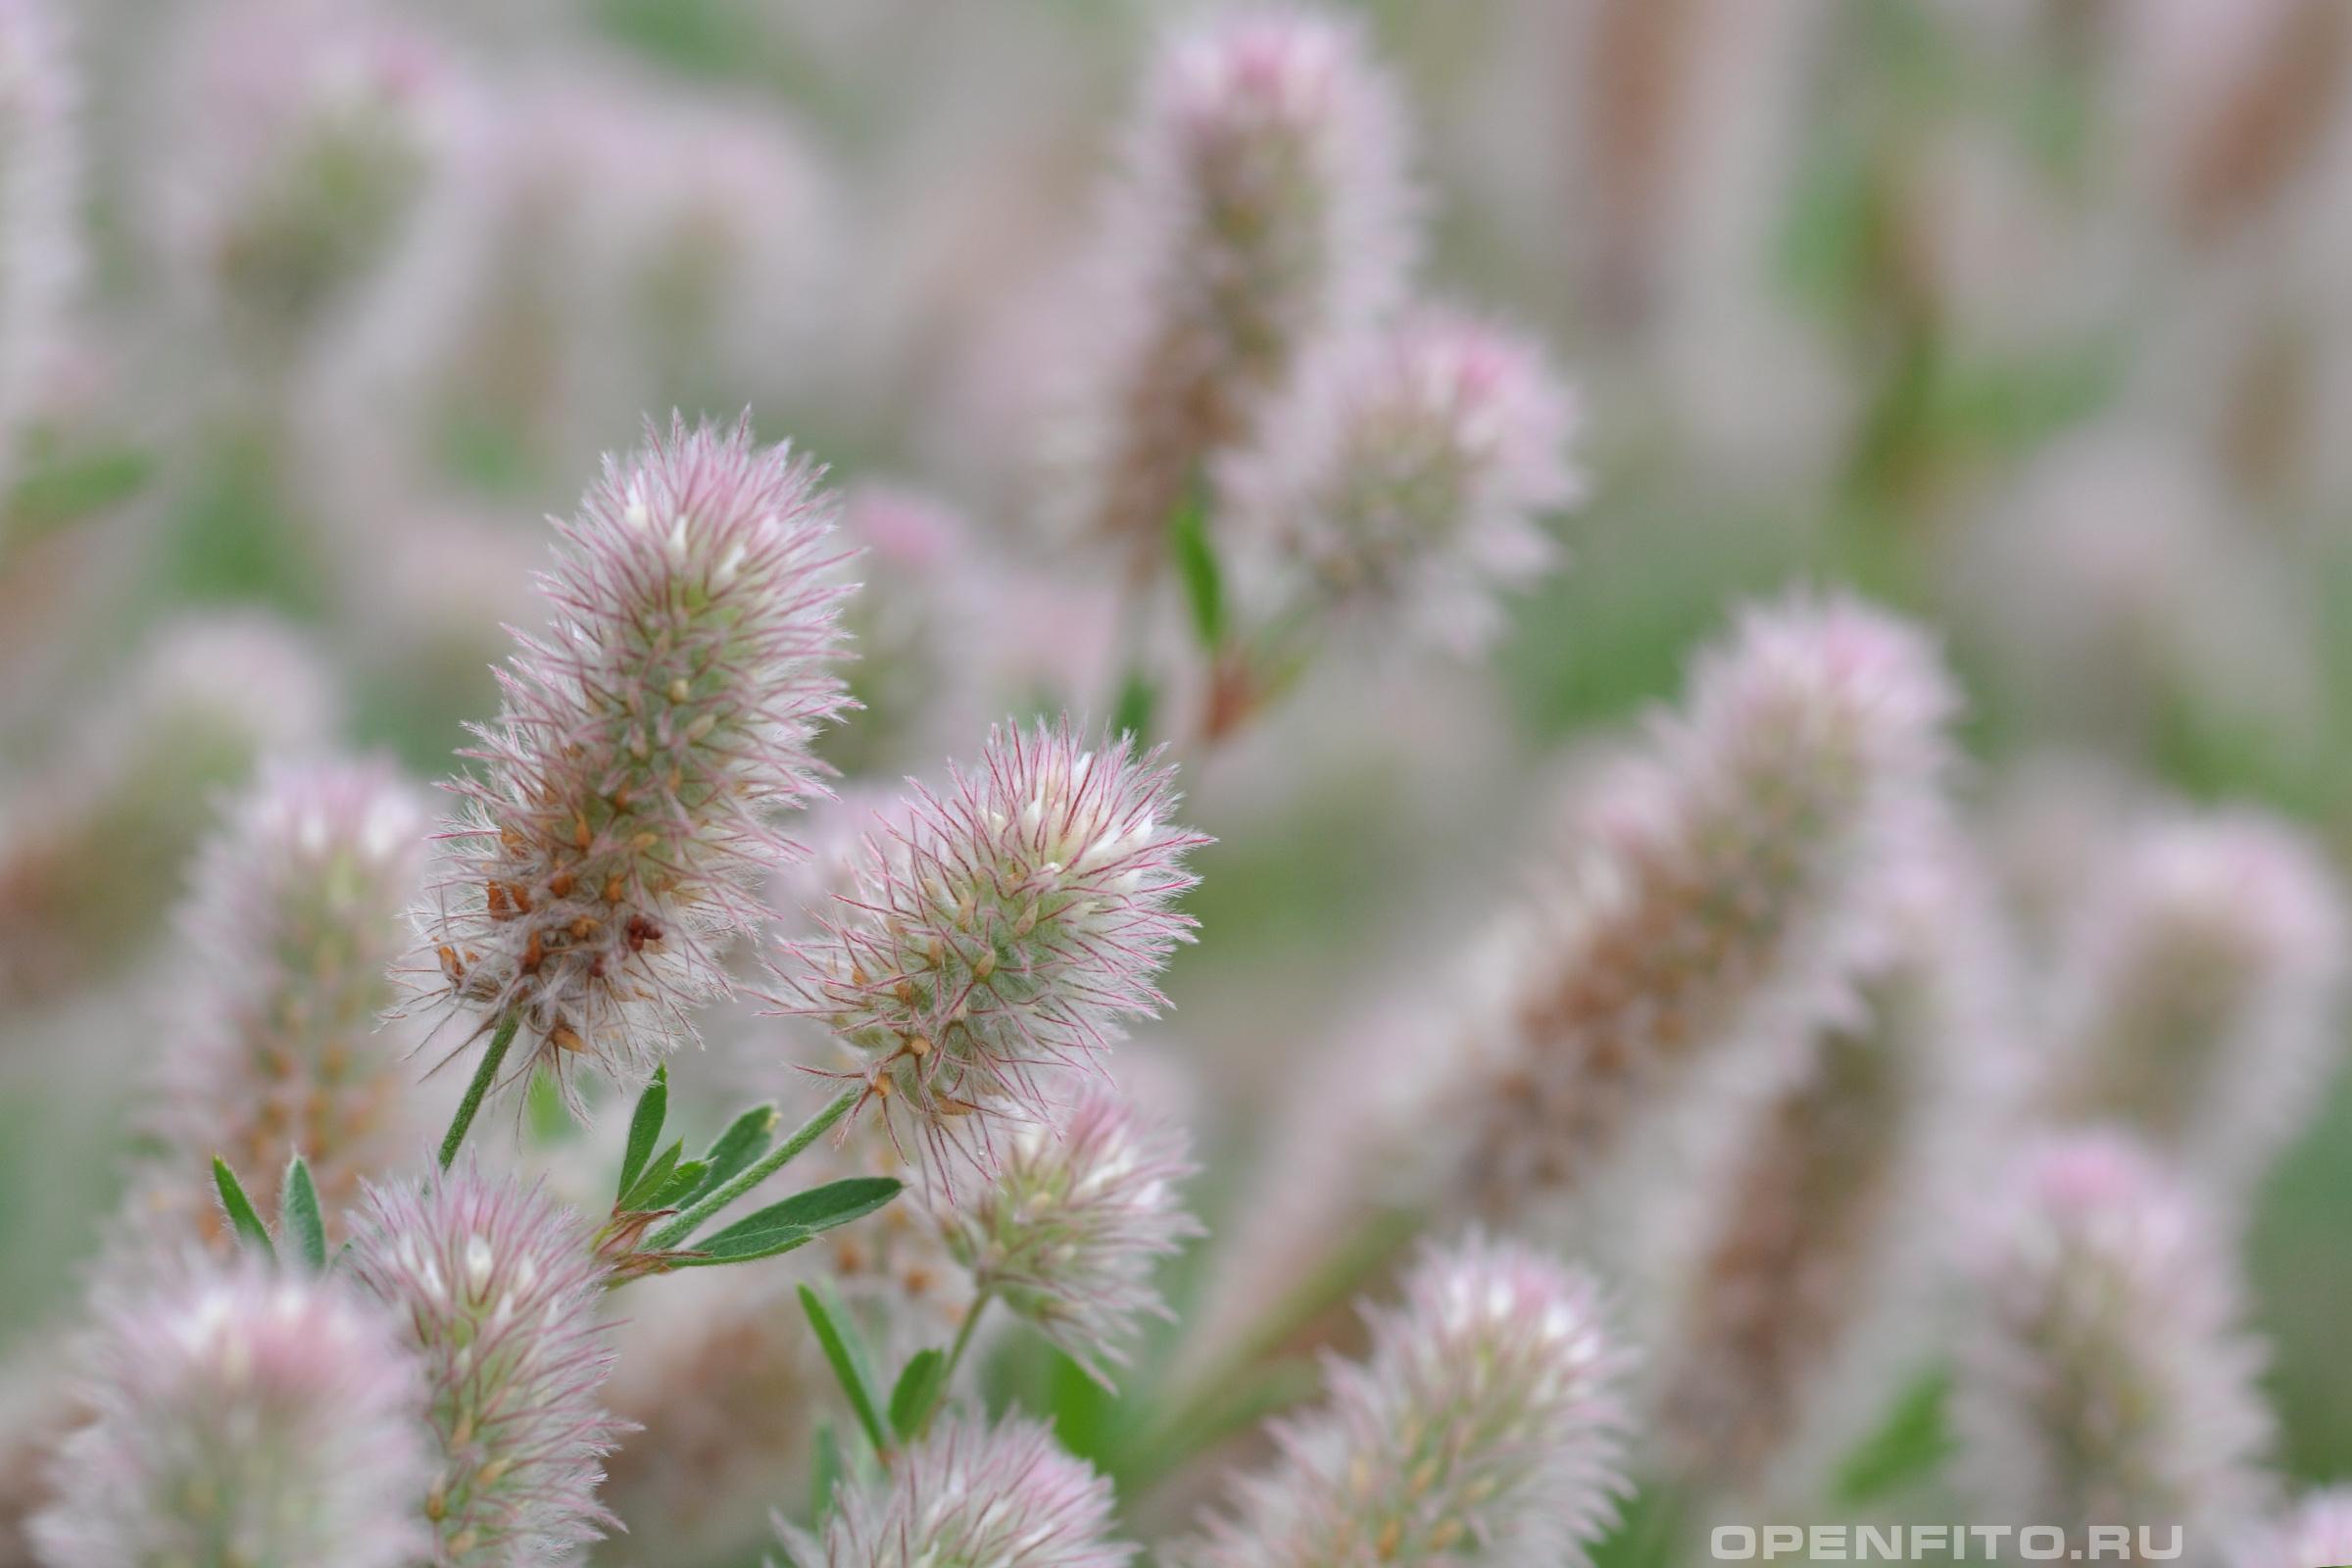 Клевер пашенный пушистые розоватые цветки травы